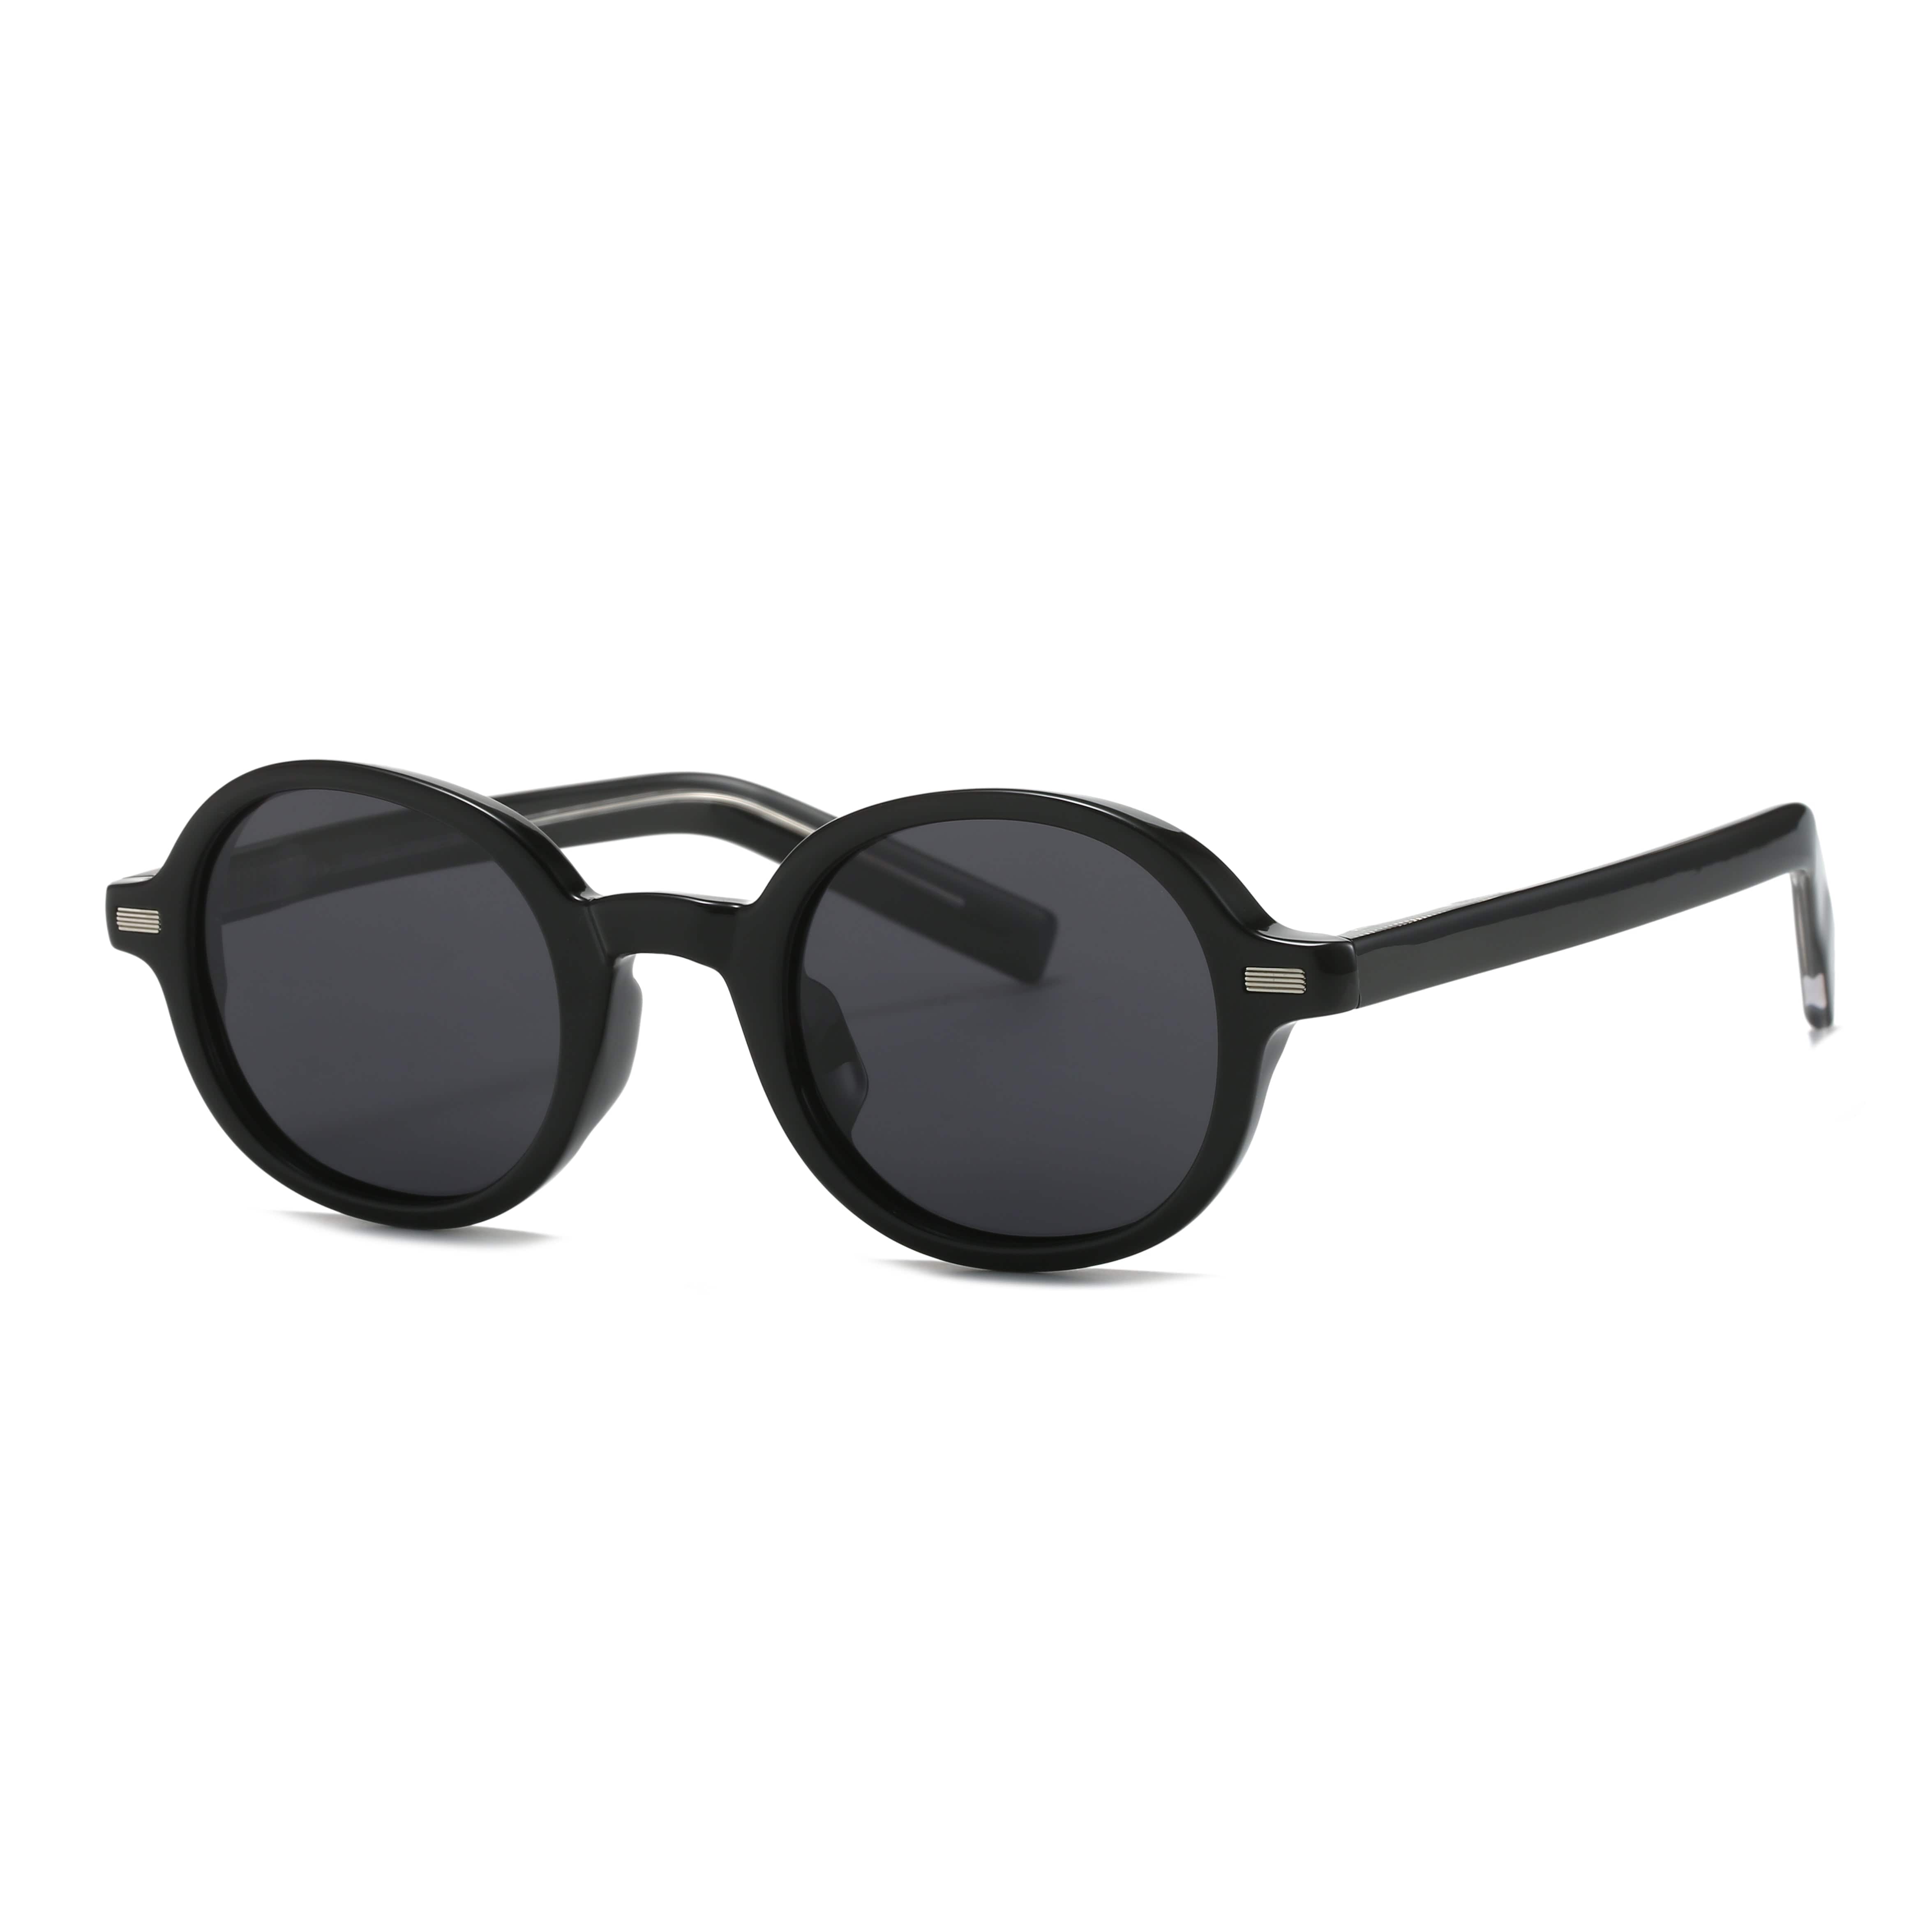 GIUSTIZIERI VECCHI Sunglasses Small / Black Paradise Prism Uno